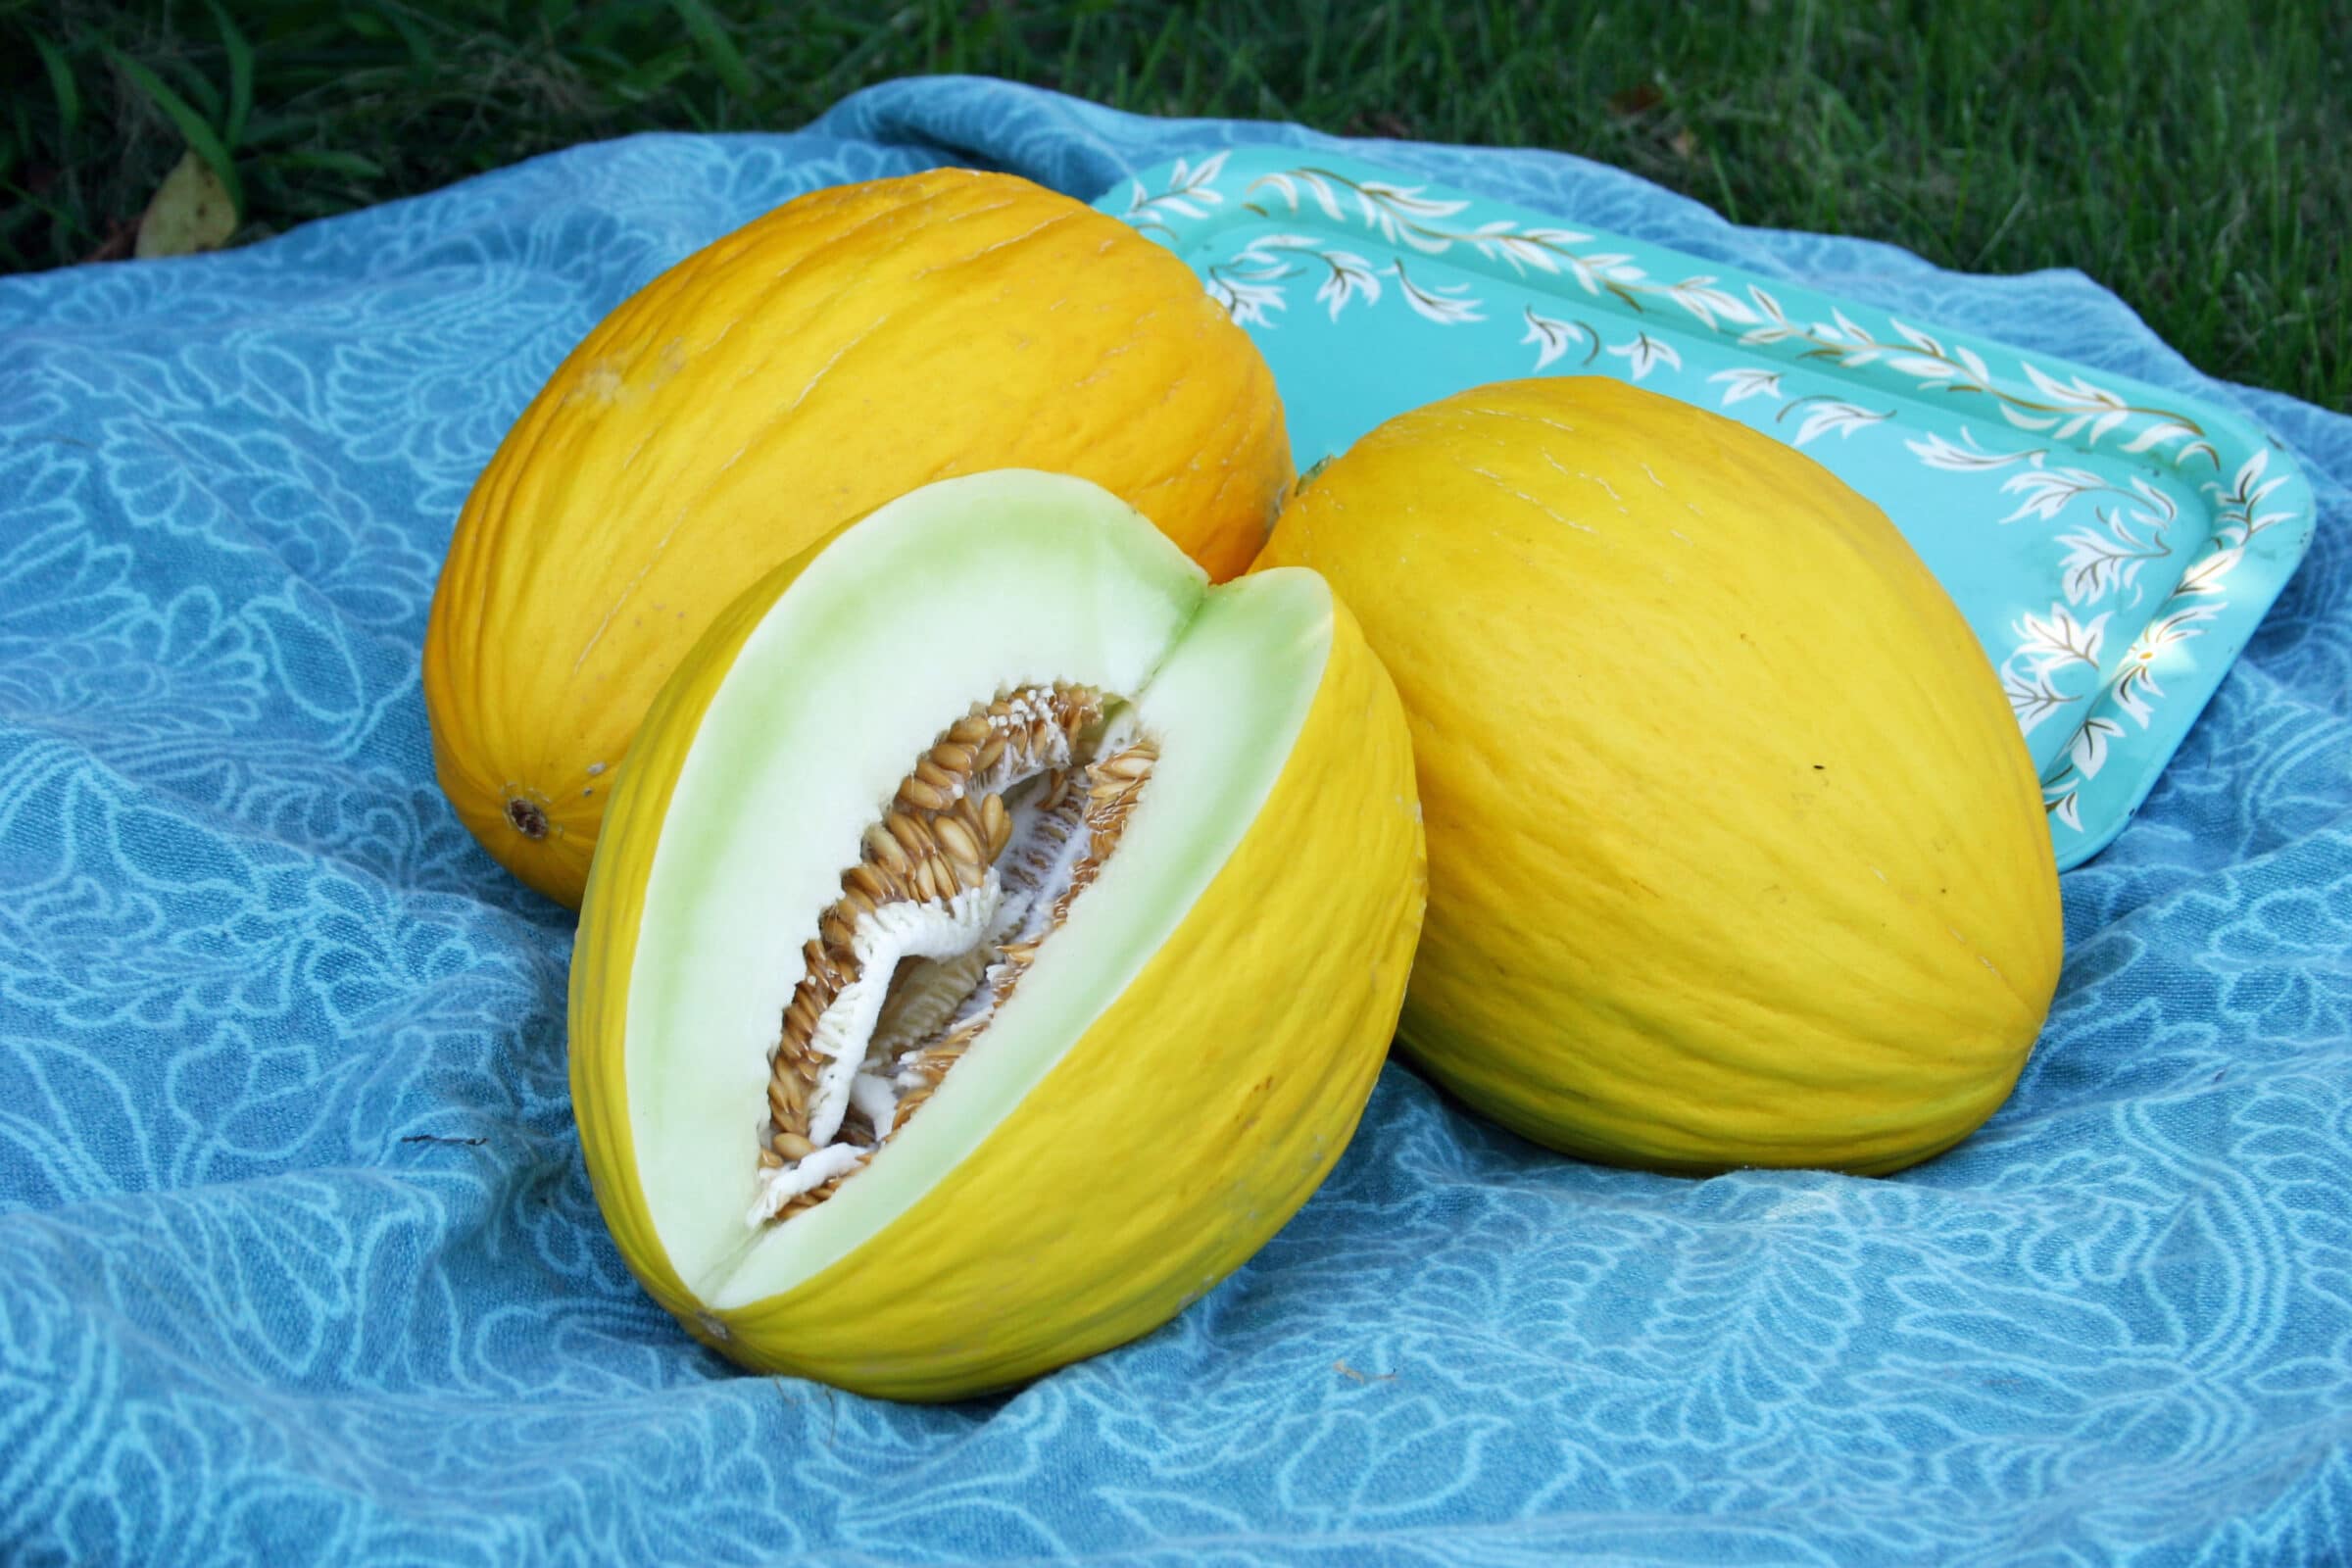 Melons diviseur ø 28 cm melons schneider obstteiler fruits diviseurs 